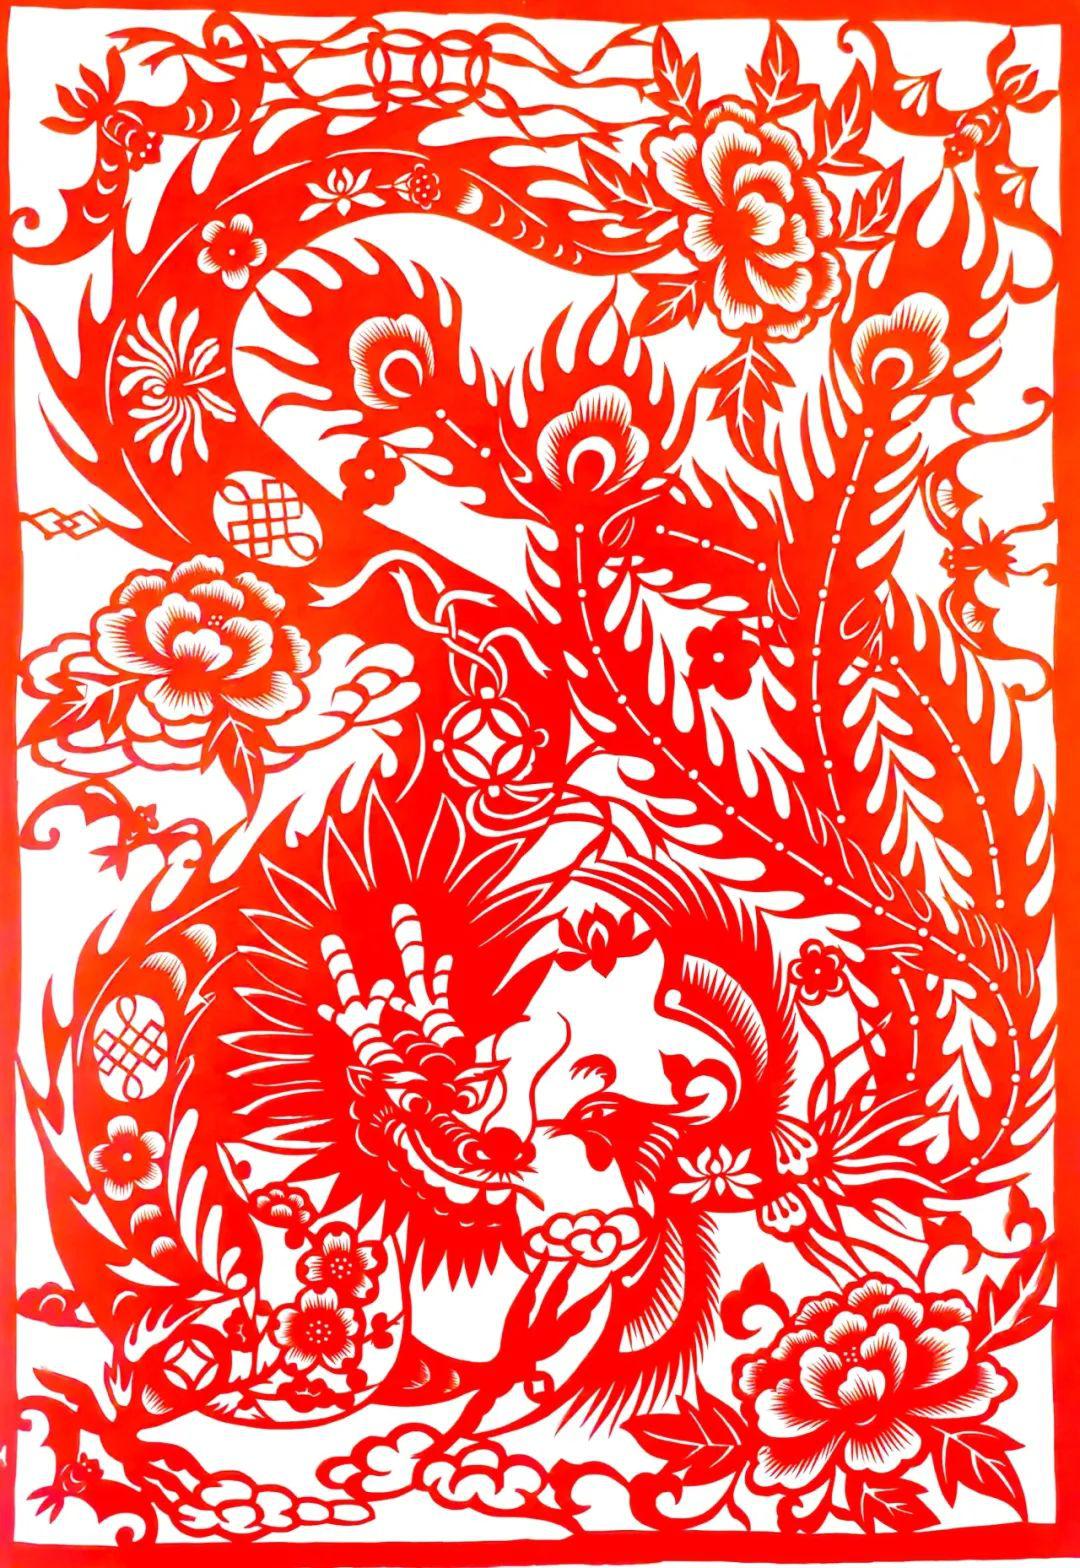 中国民间剪纸微刊《百年献瑞迎新年》全国龙文化剪纸精品展览 图356